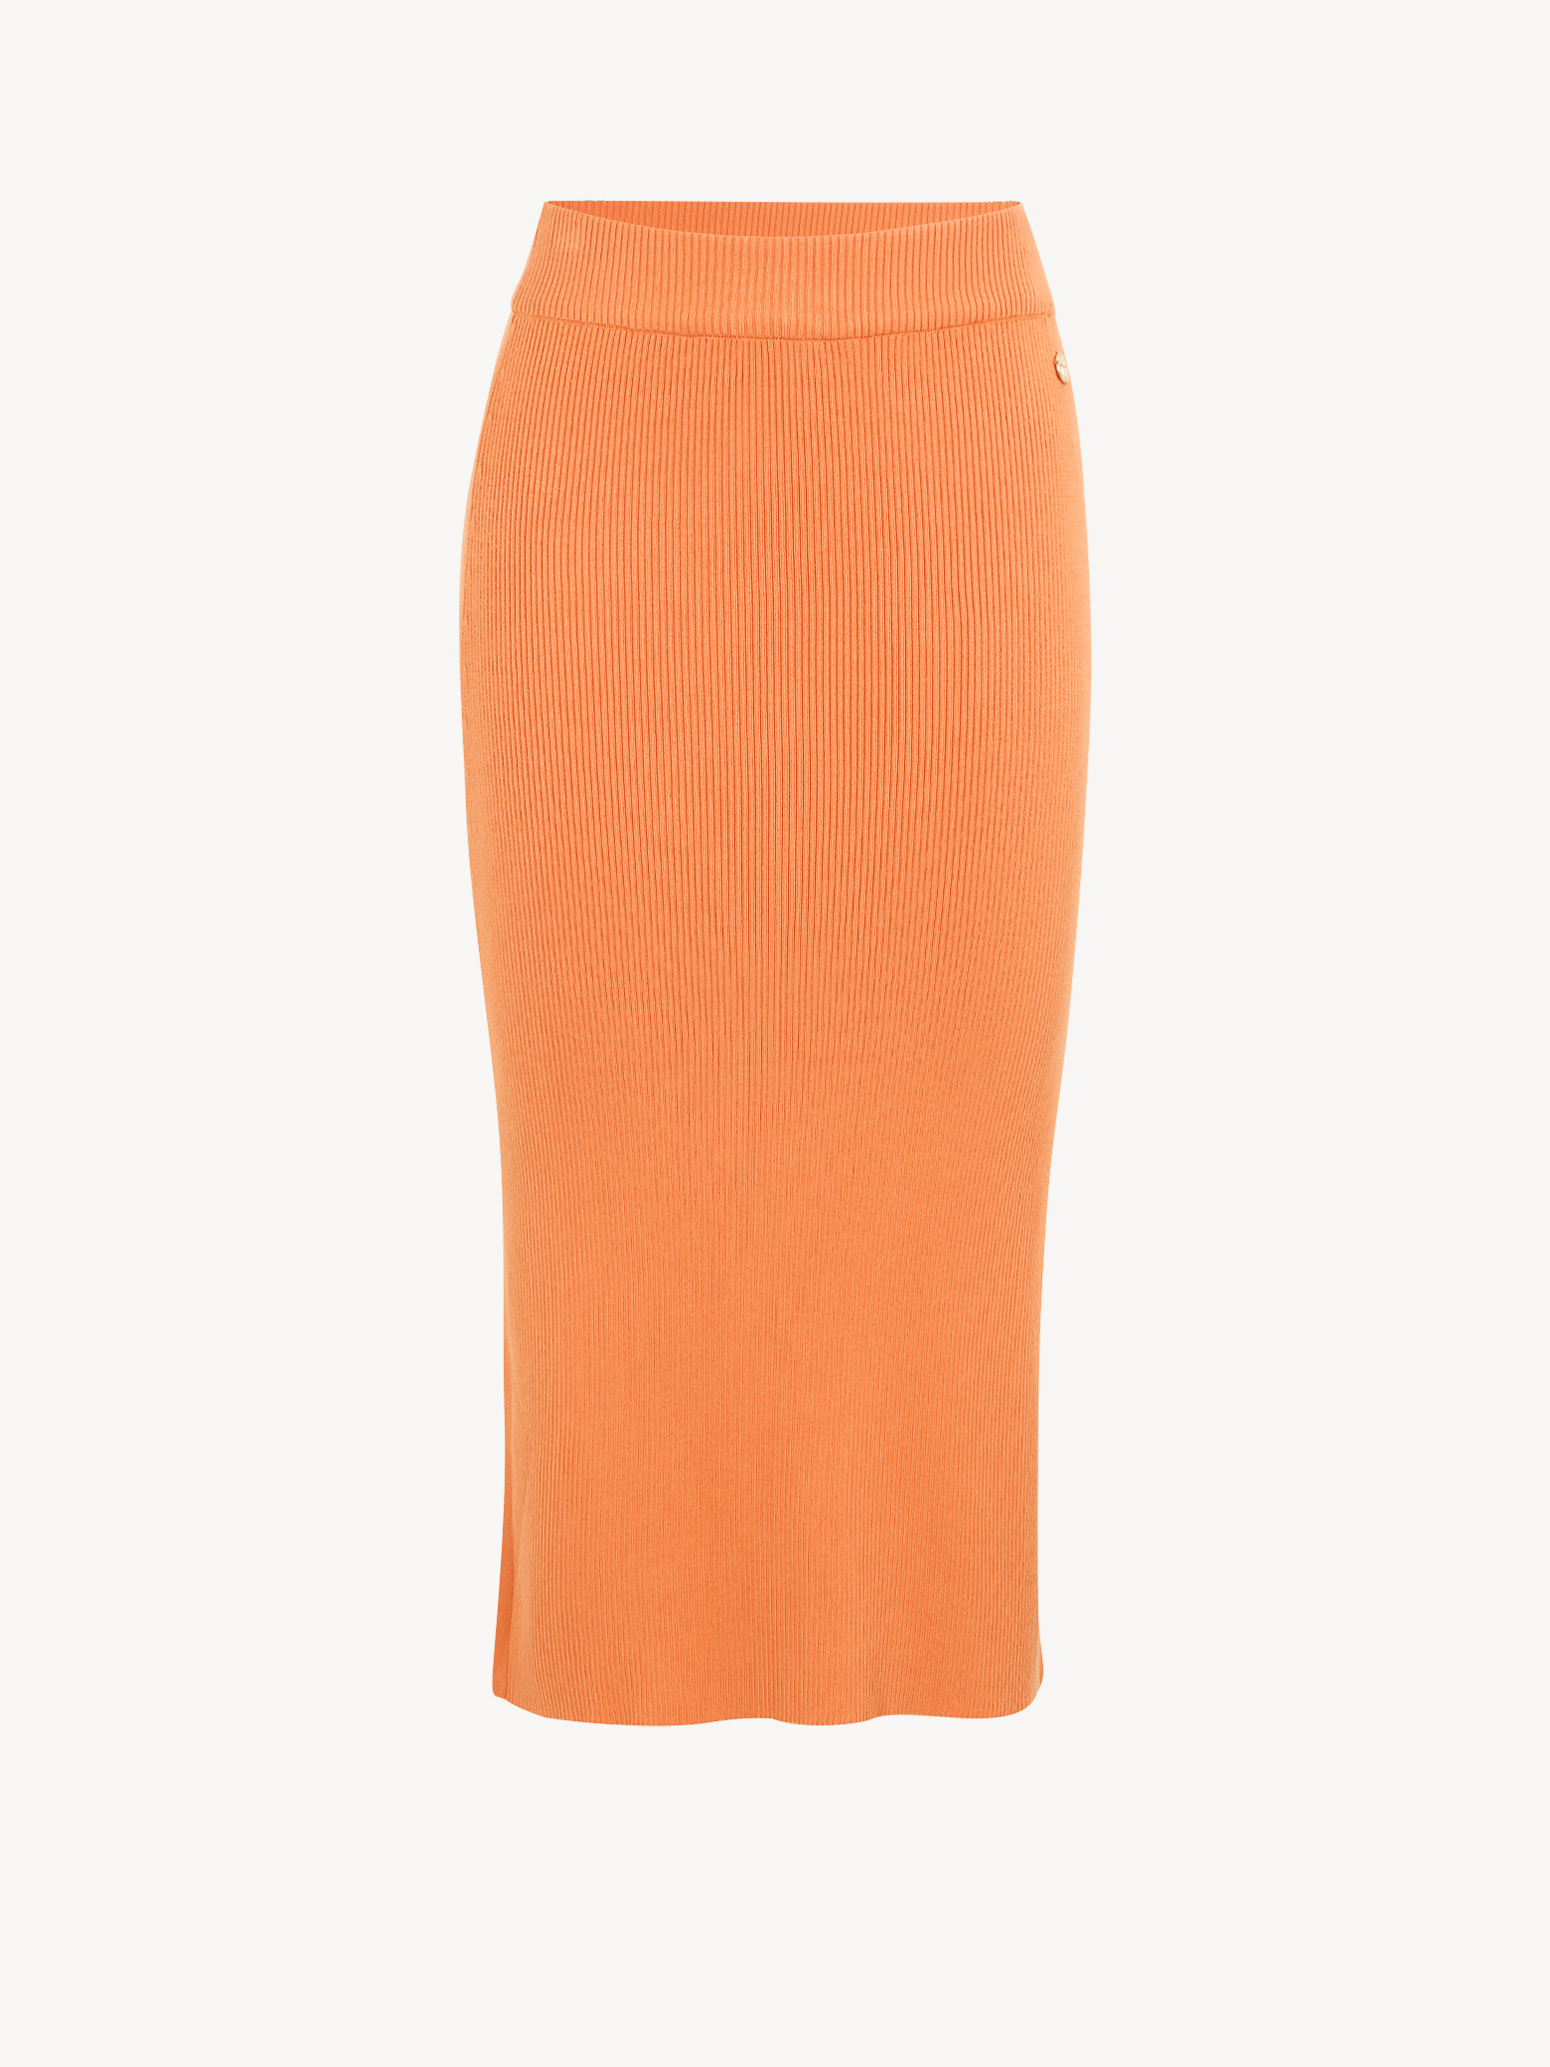 Skirt - orange